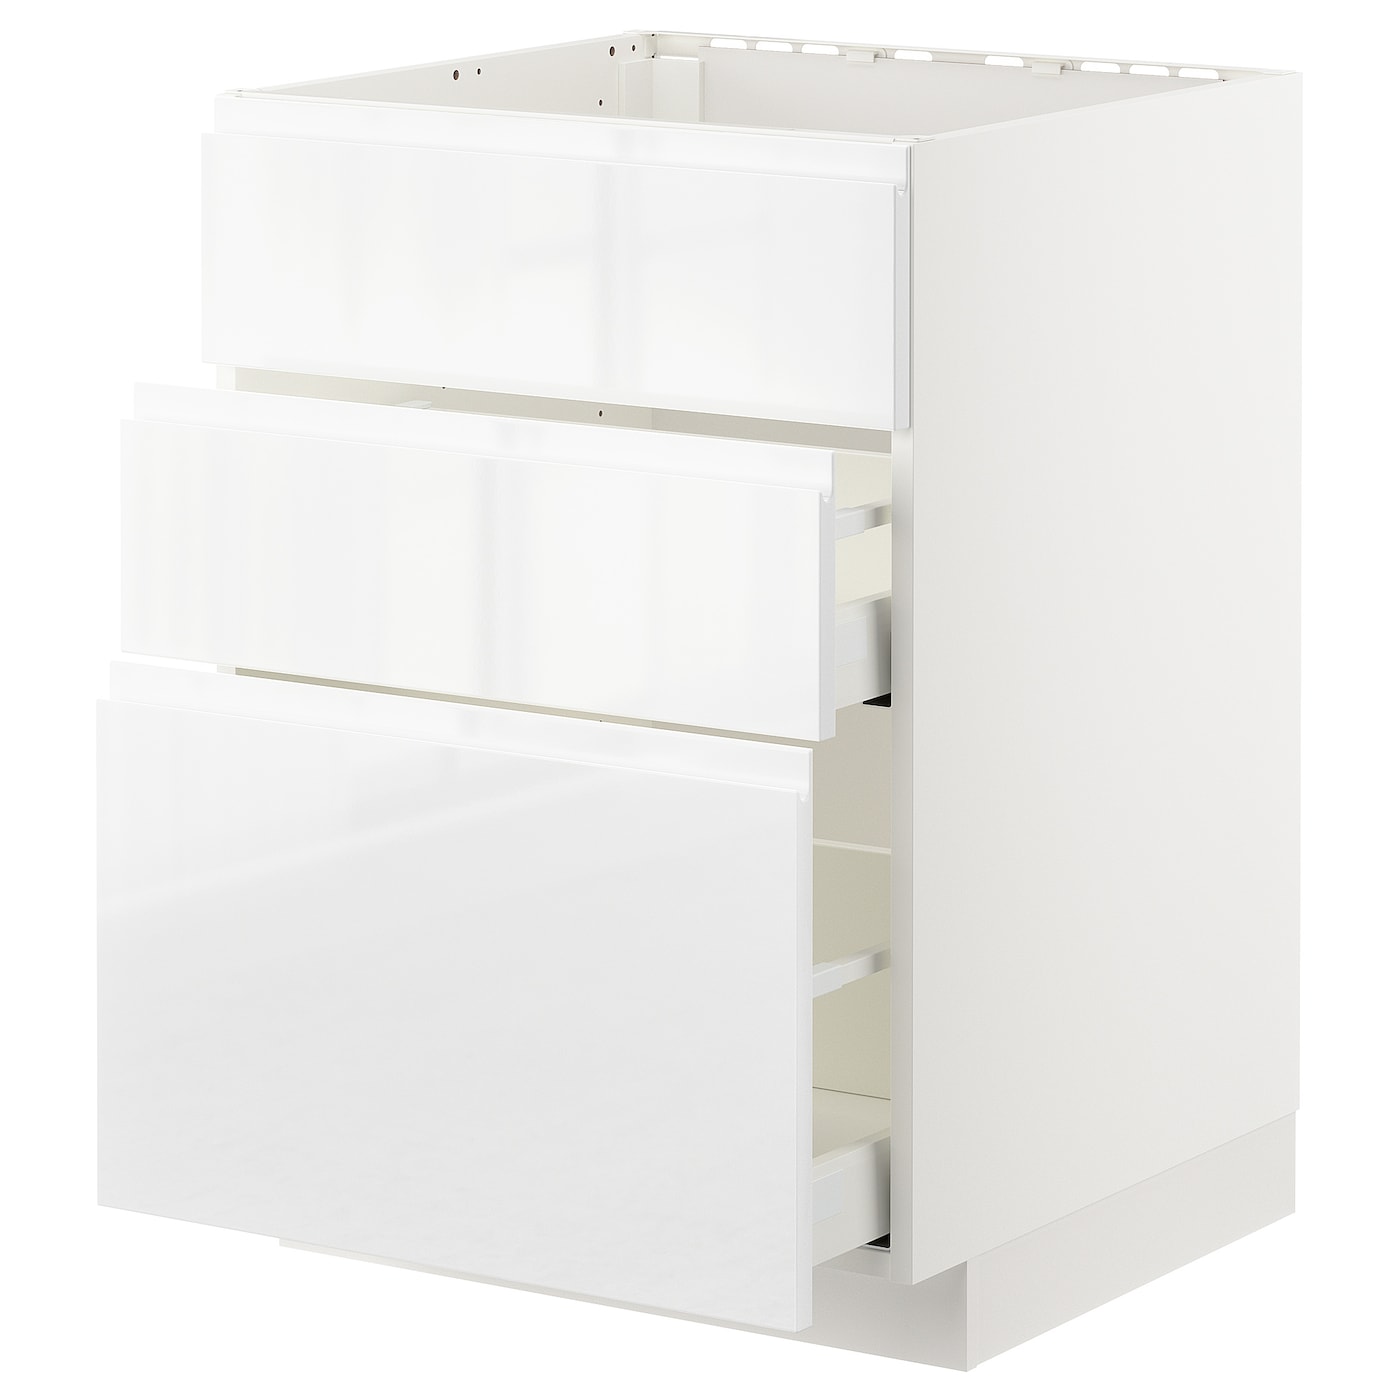 Напольный кухонный шкаф  - IKEA METOD MAXIMERA, 88x62,1x60см, белый, МЕТОД МАКСИМЕРА ИКЕА